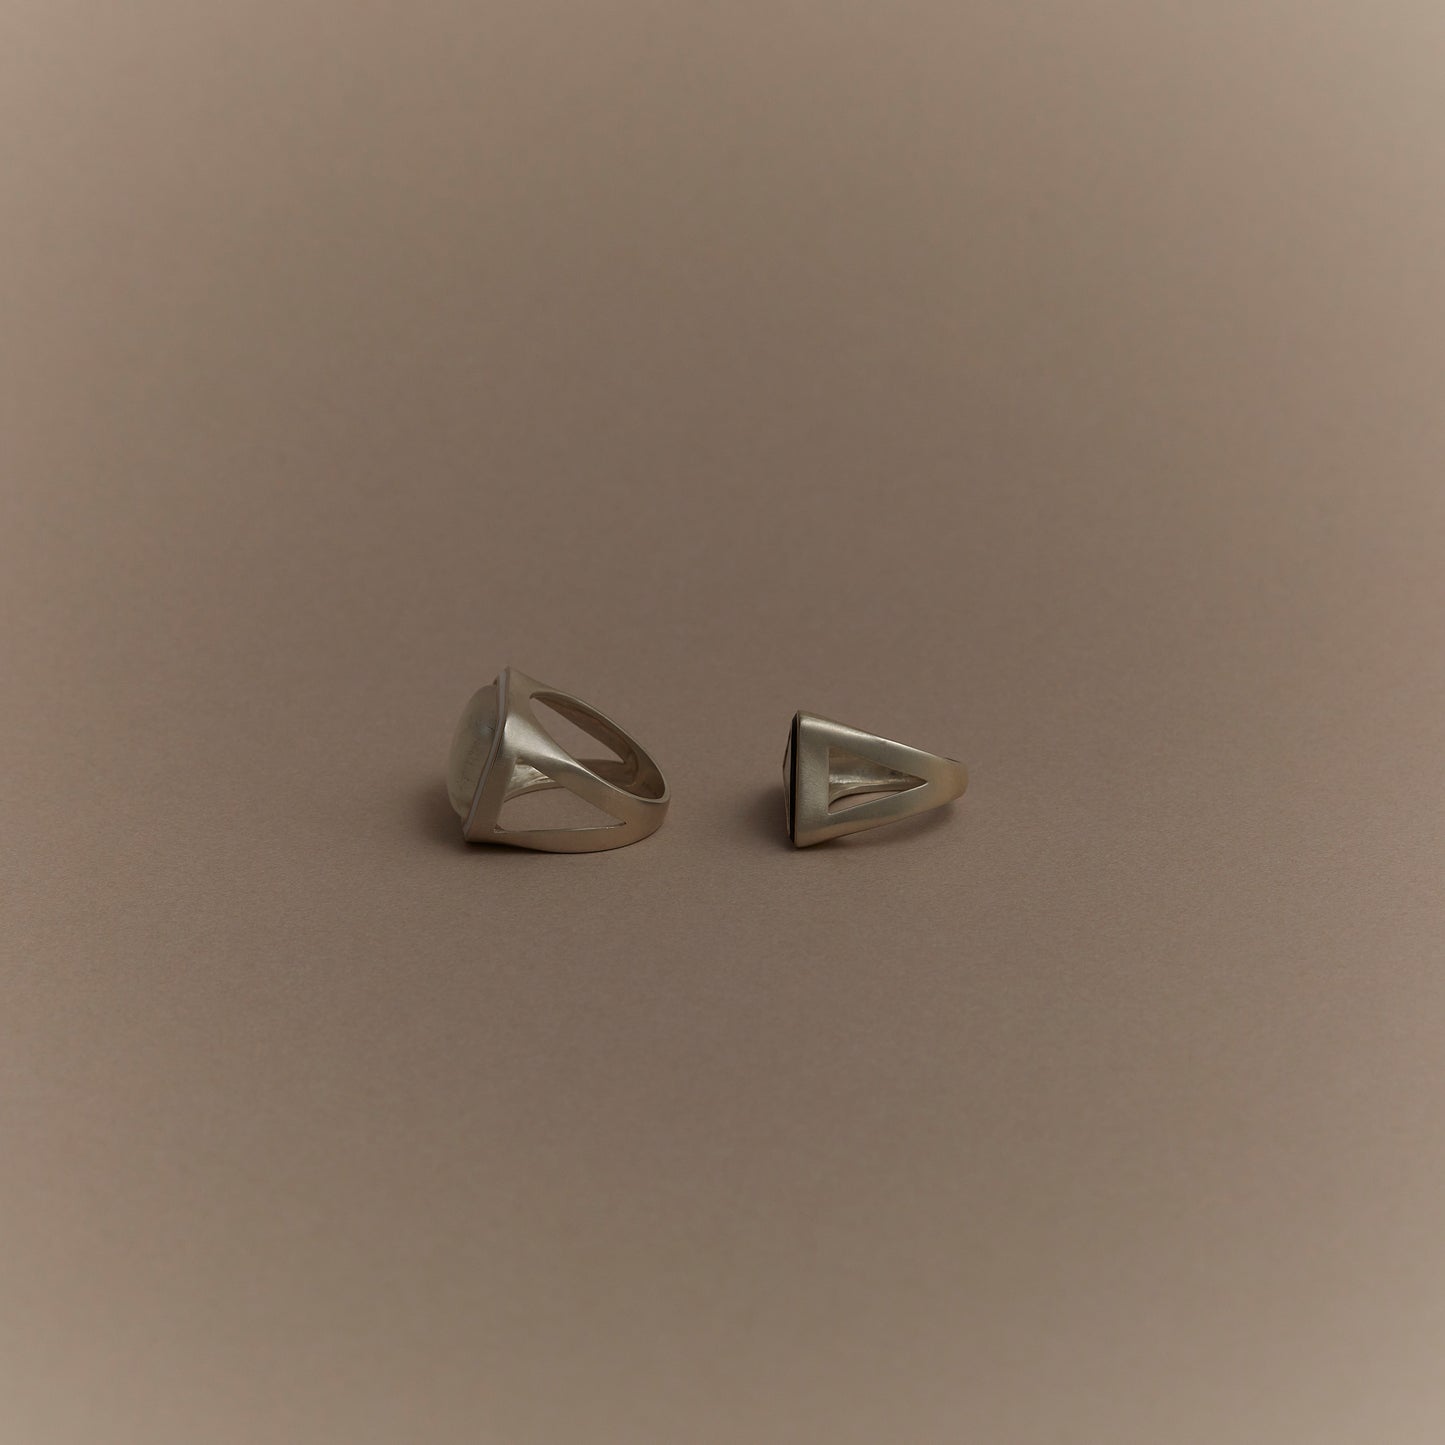 885 Dendrite Opal | One of a Kind Mibu Ring